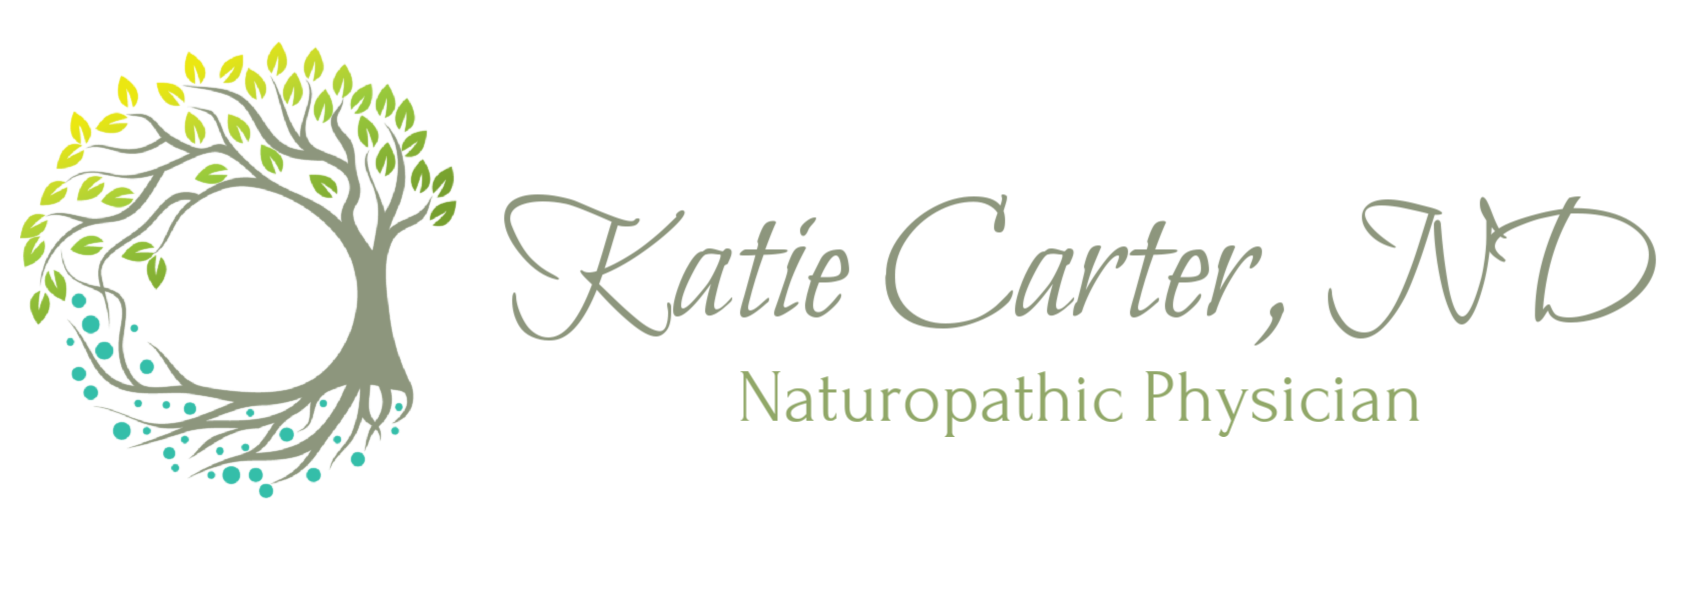 Dr. Katie Carter